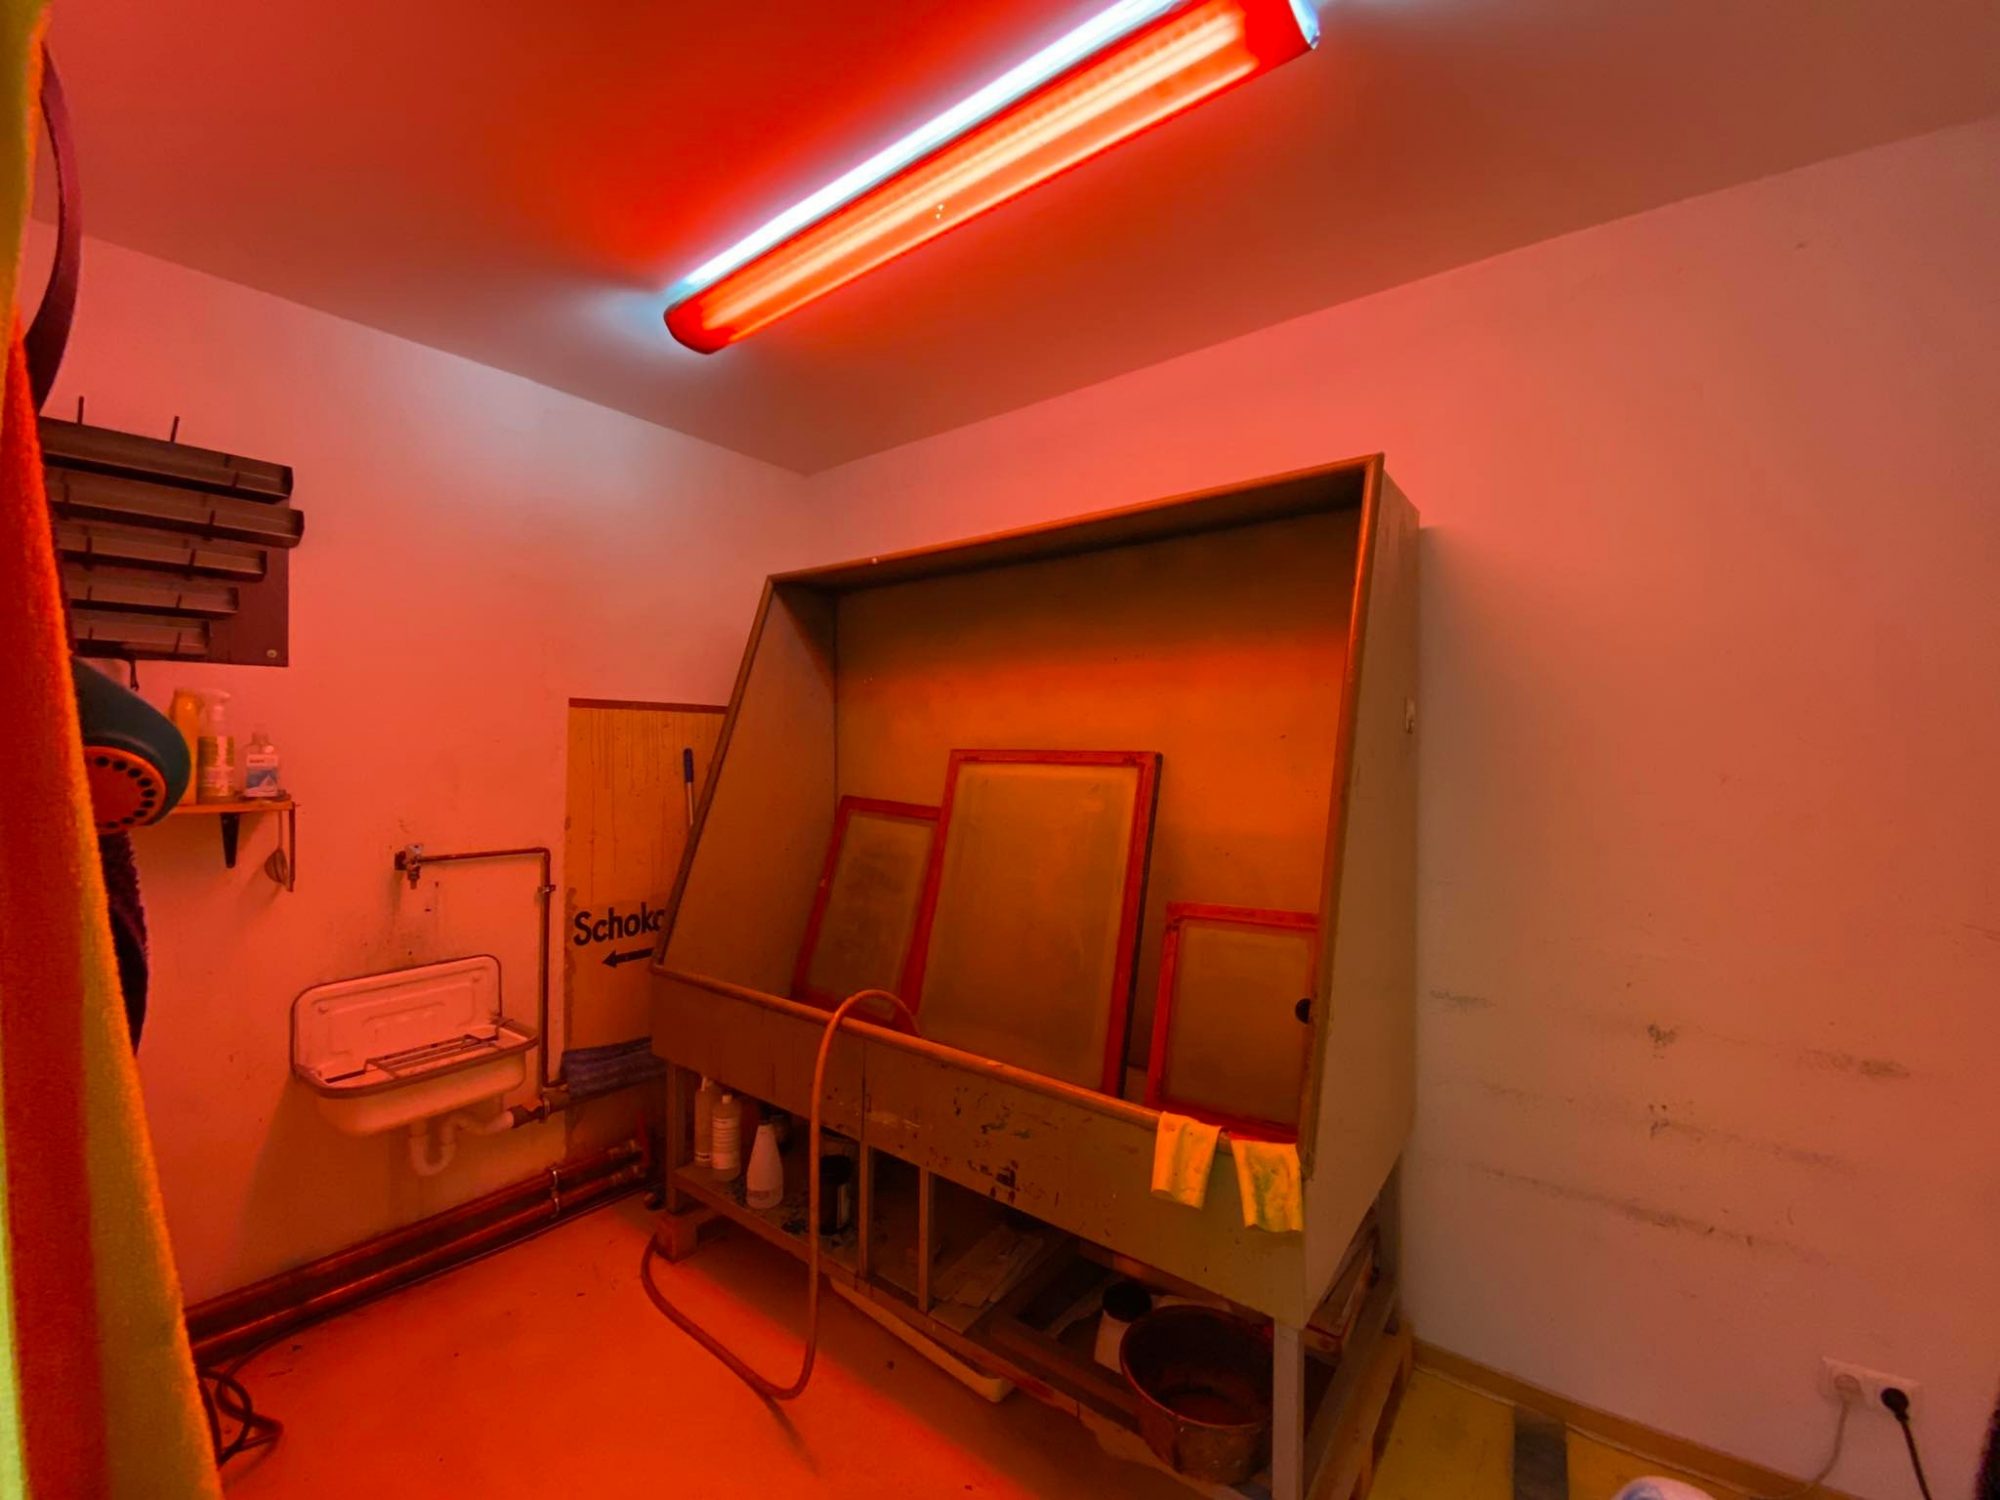 Trockenraum rot beleuchtet in einer Siebdruckwerkstatt